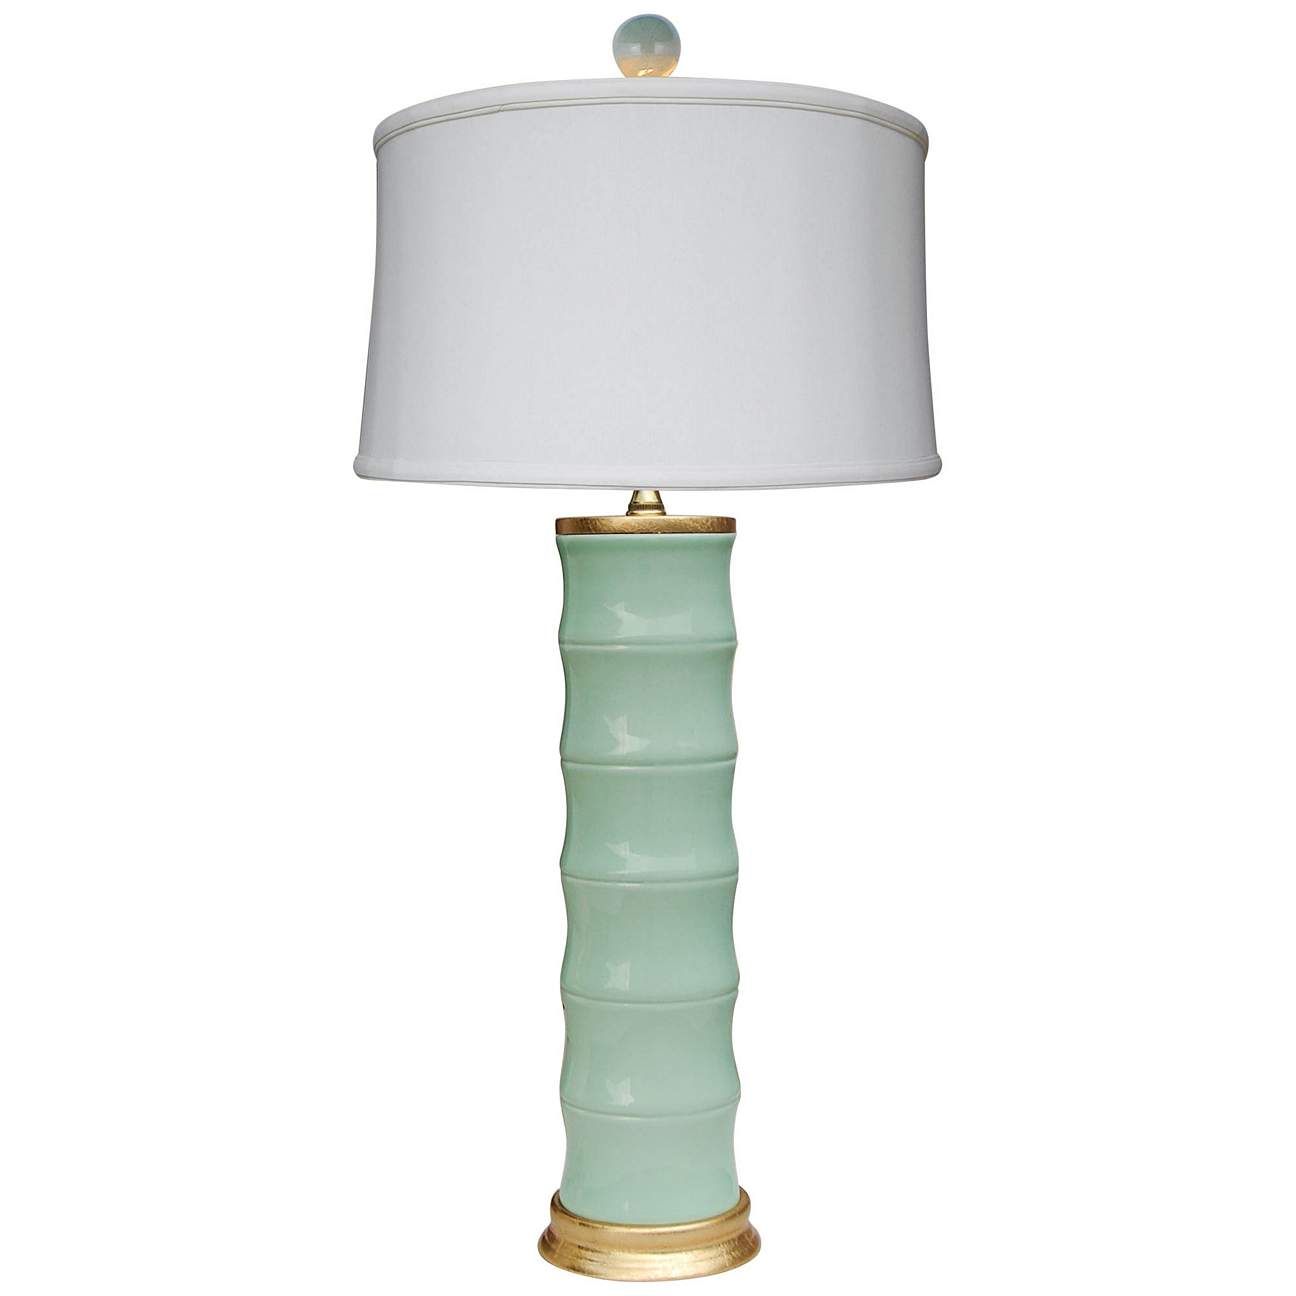 Emma Celadon Bamboo Porcelain Table Lamp - #61Y43 | Lamps Plus | LampsPlus.com